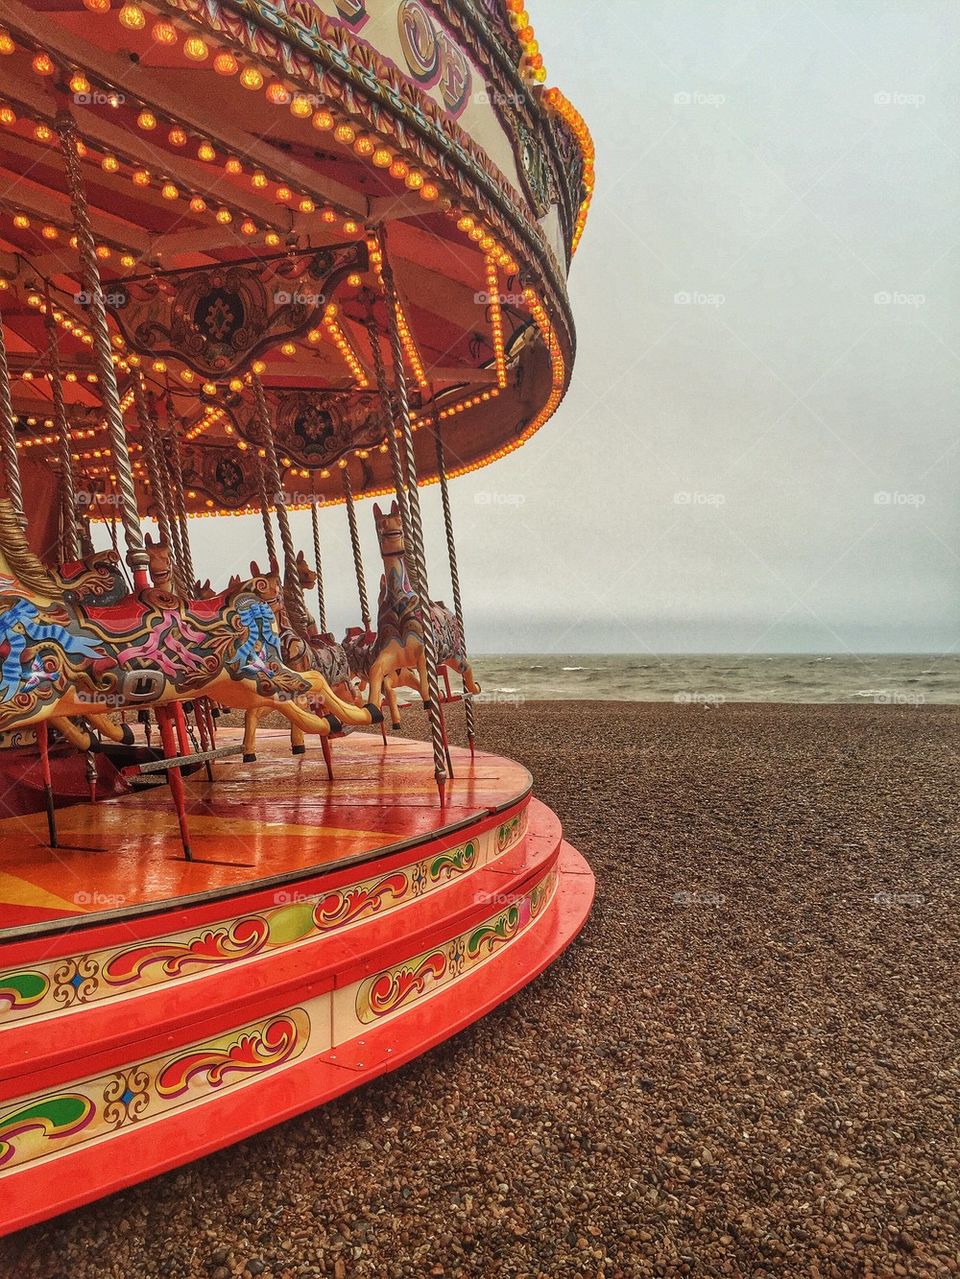 Carousel at beach